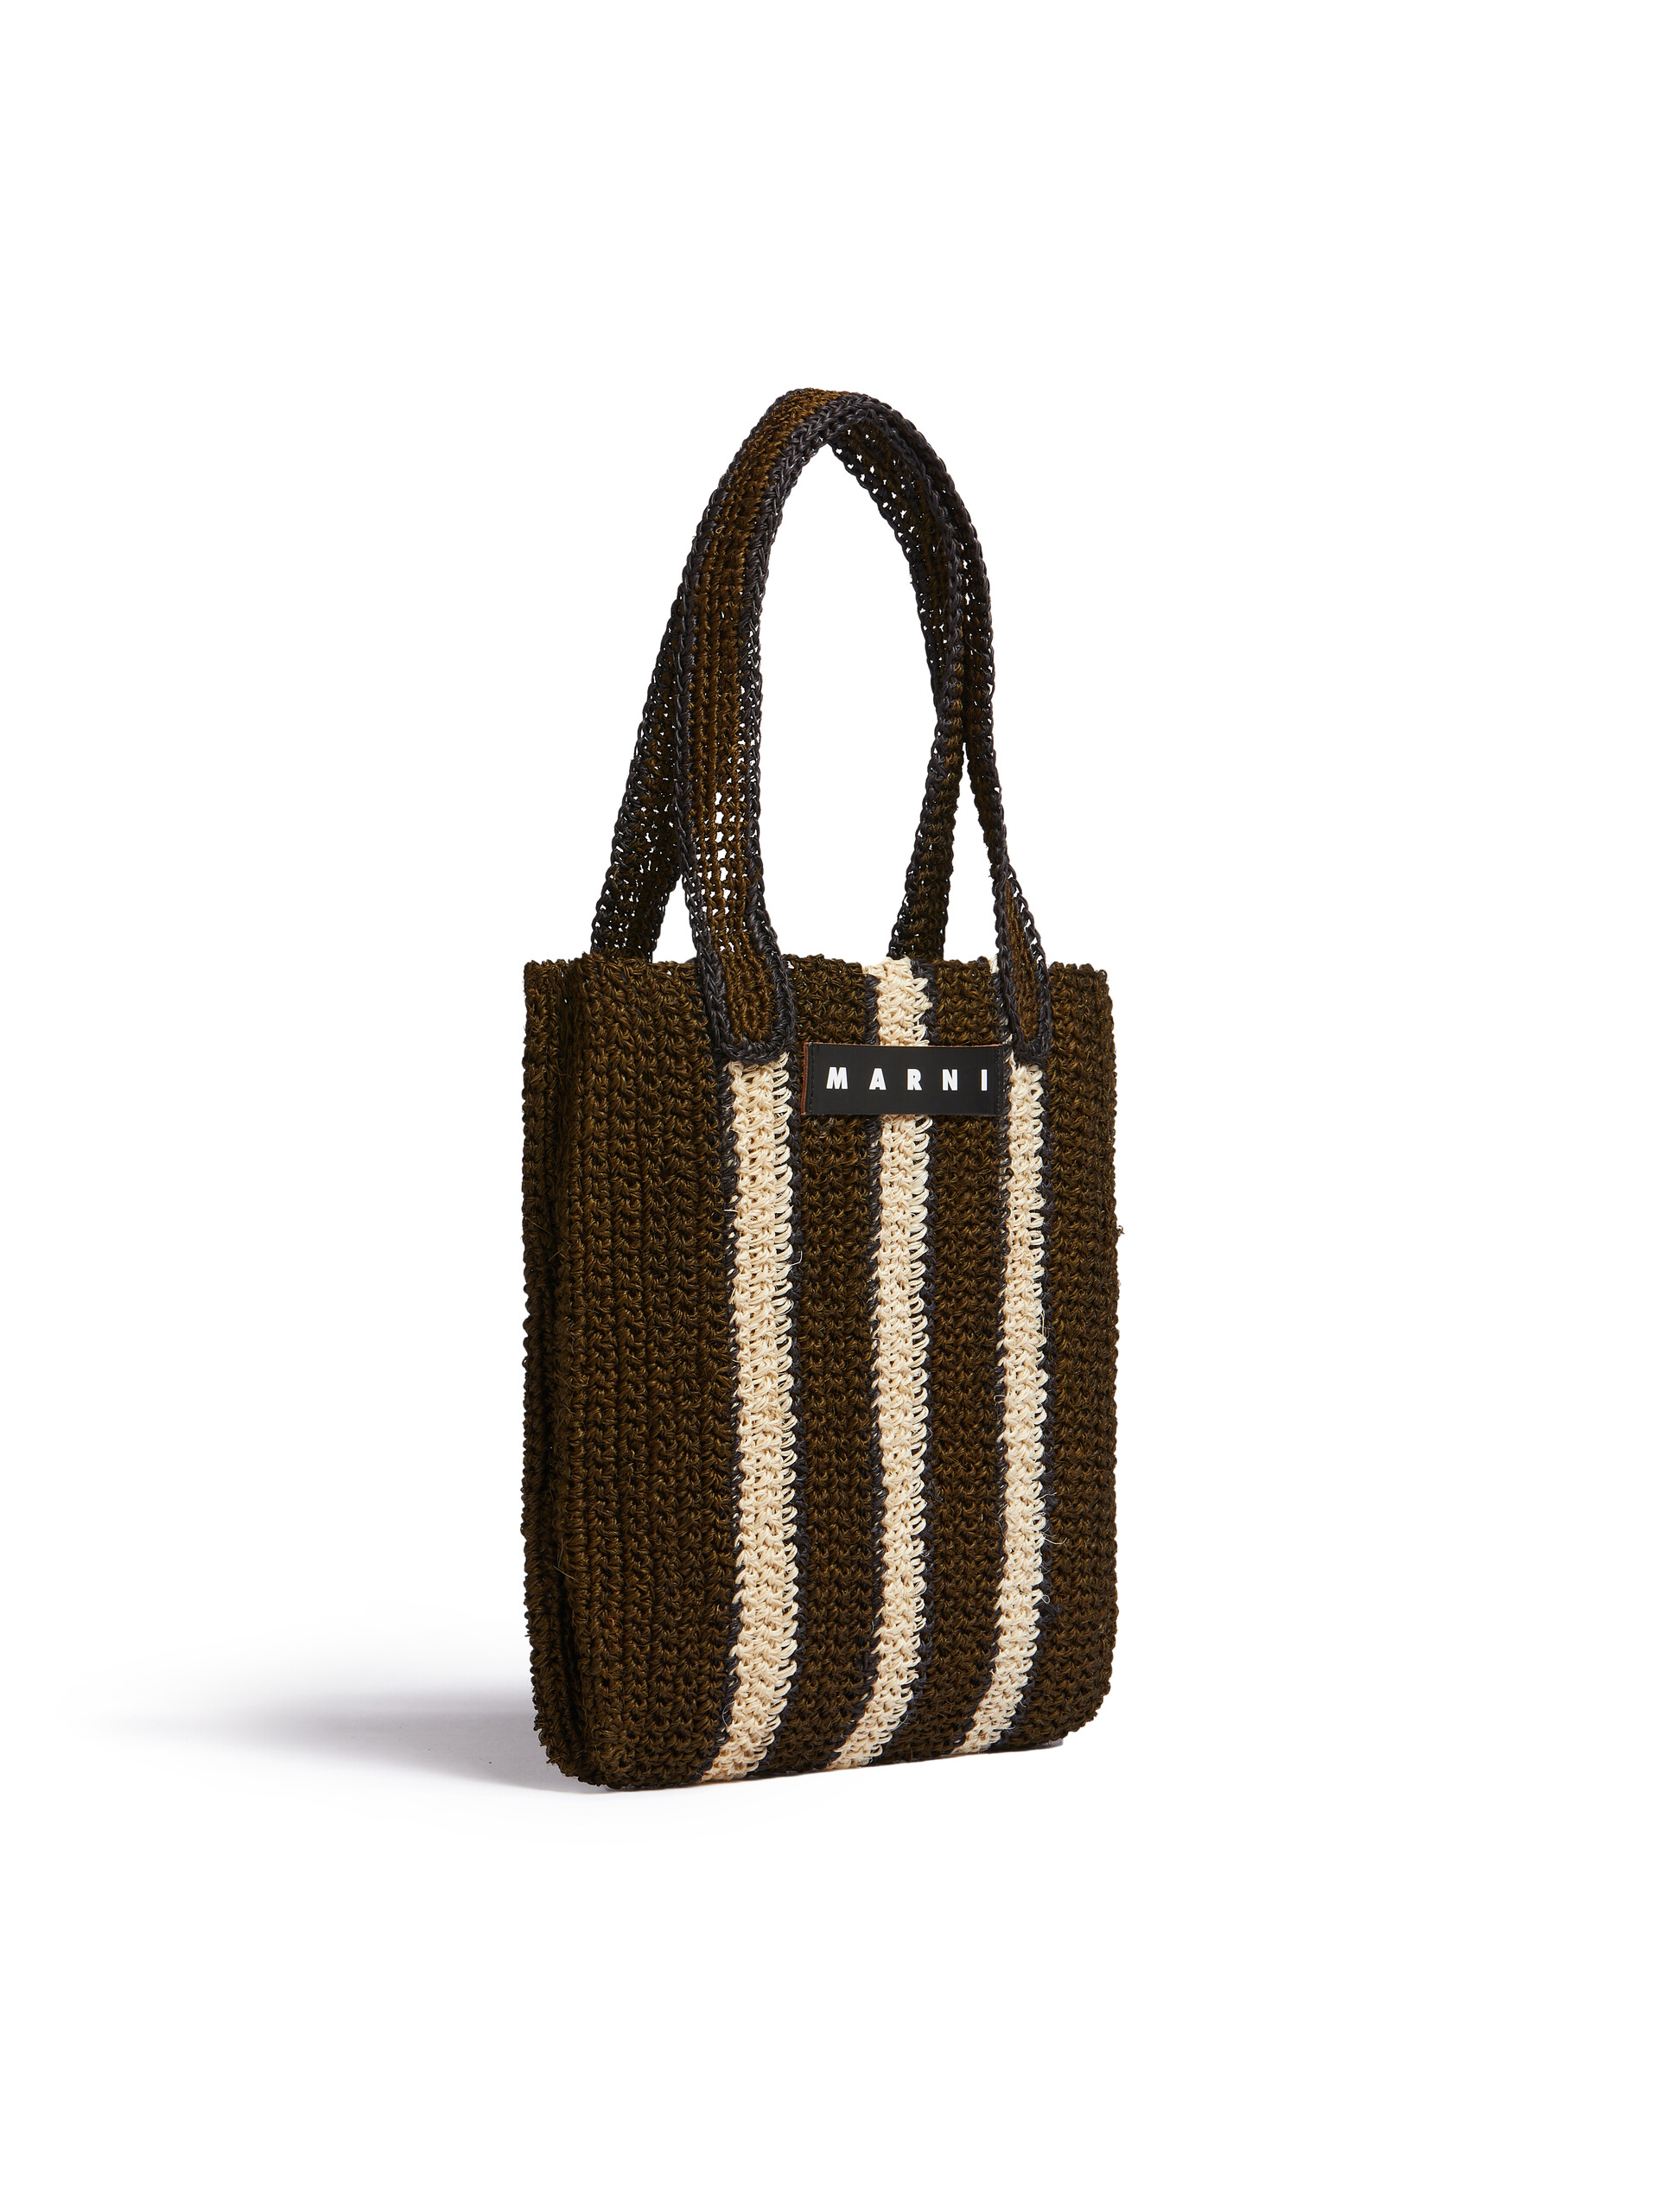 Green and beige striped MARNI MARKET FIQUE crochet bag | Marni